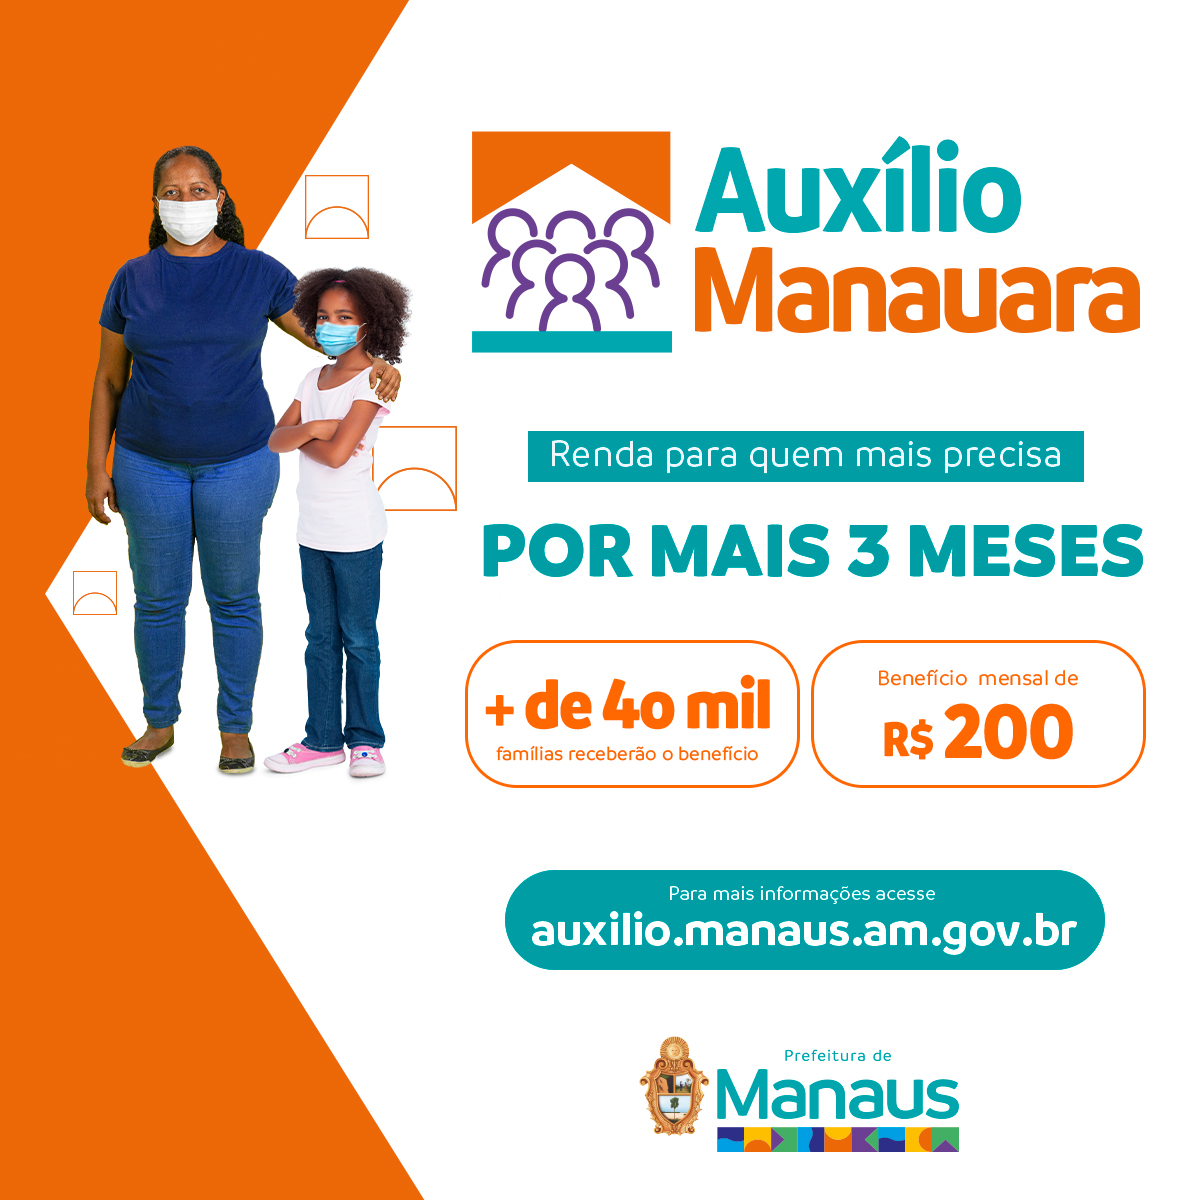 Auxílio Manauara: Renda para quem mais precisa